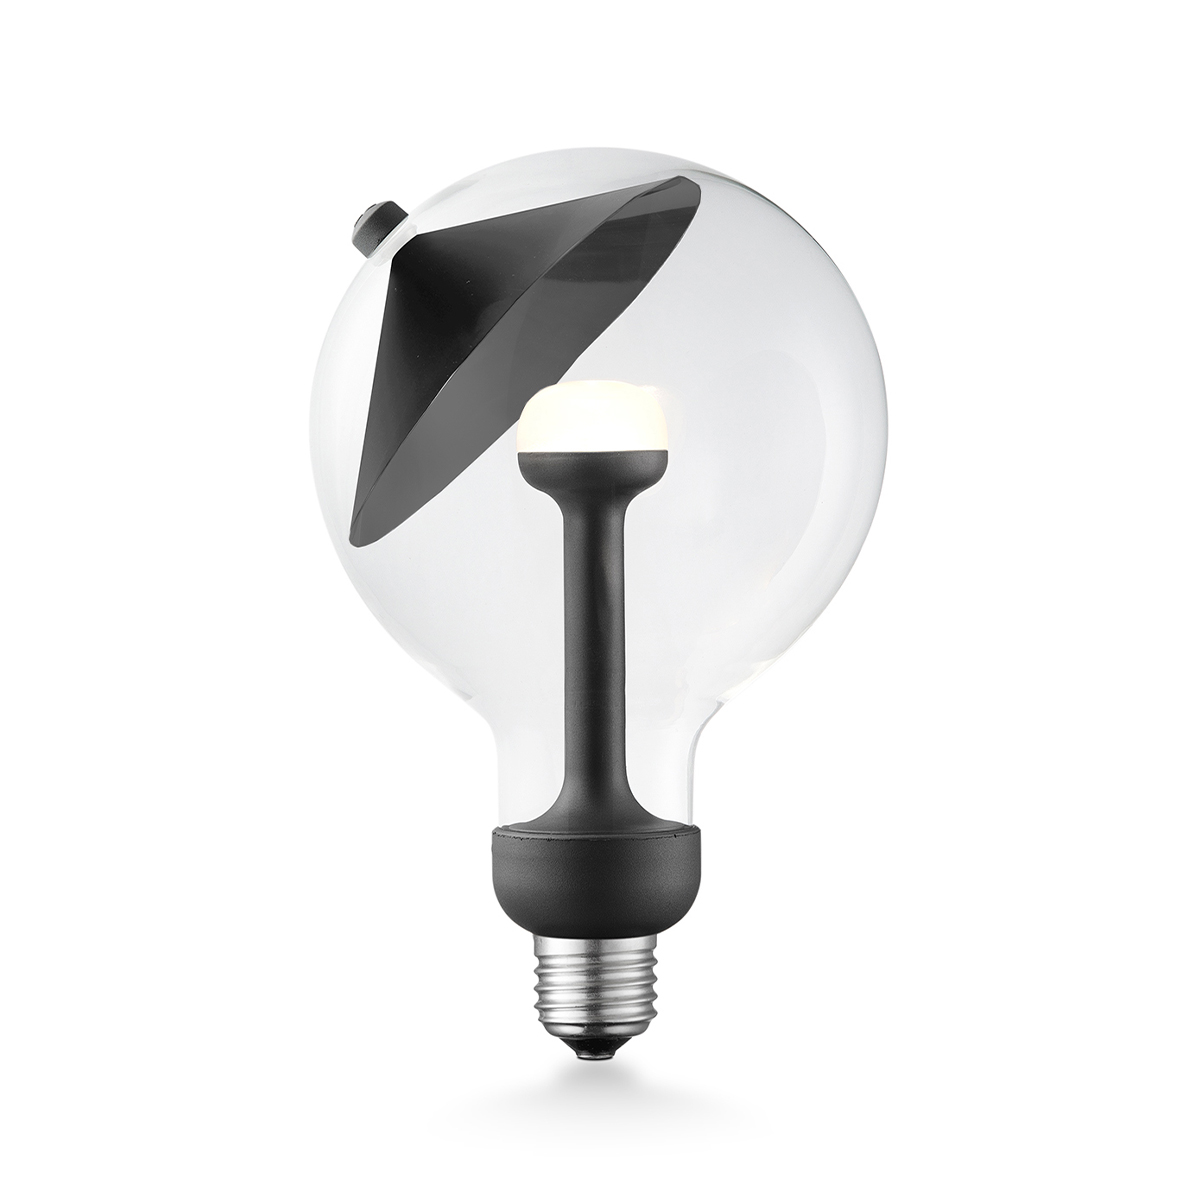 Tangla lighting - 0671-05-D - LED Light Bulb Move me - G120 5.5W Cone black - dimmable - E27 / E26